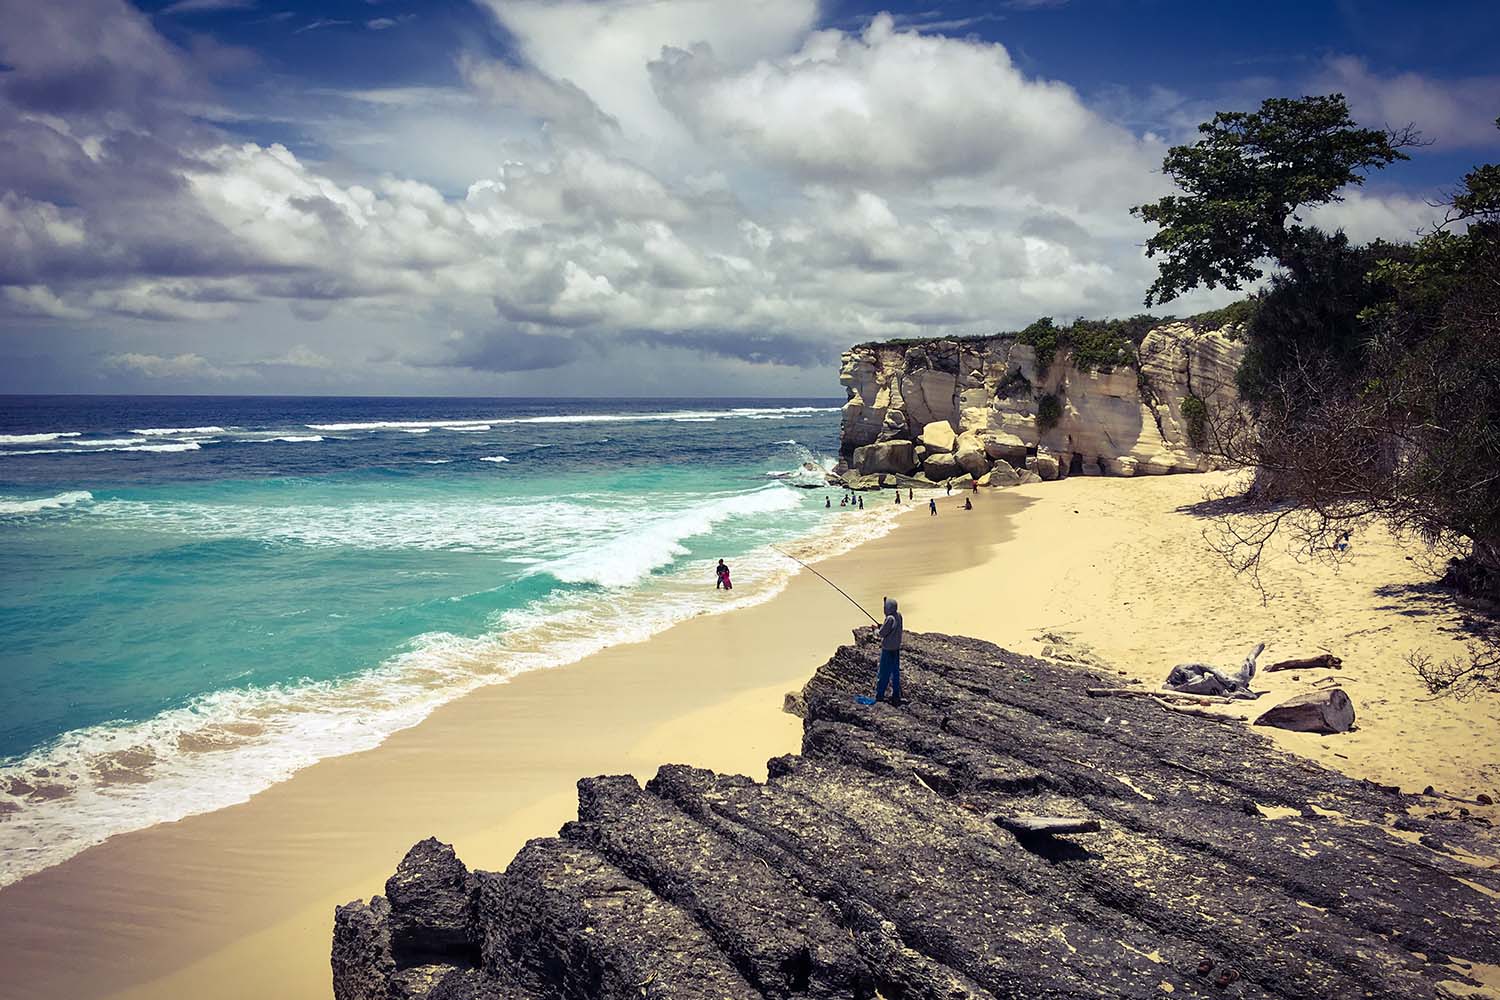 La Belle  Sumba plus  belles plages sauvages d Indon sie  